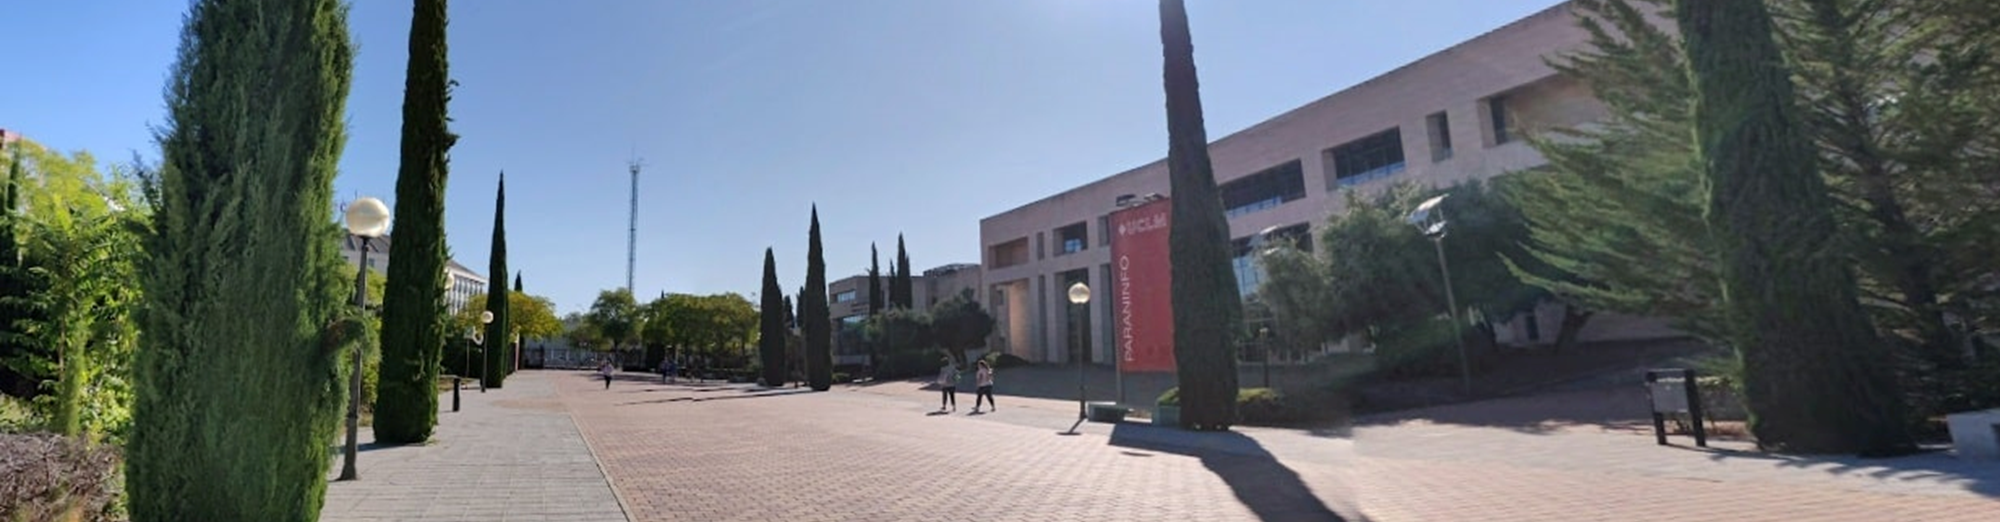 Paraninfo Luis Arroyo - Universidad de Castilla-La Mancha